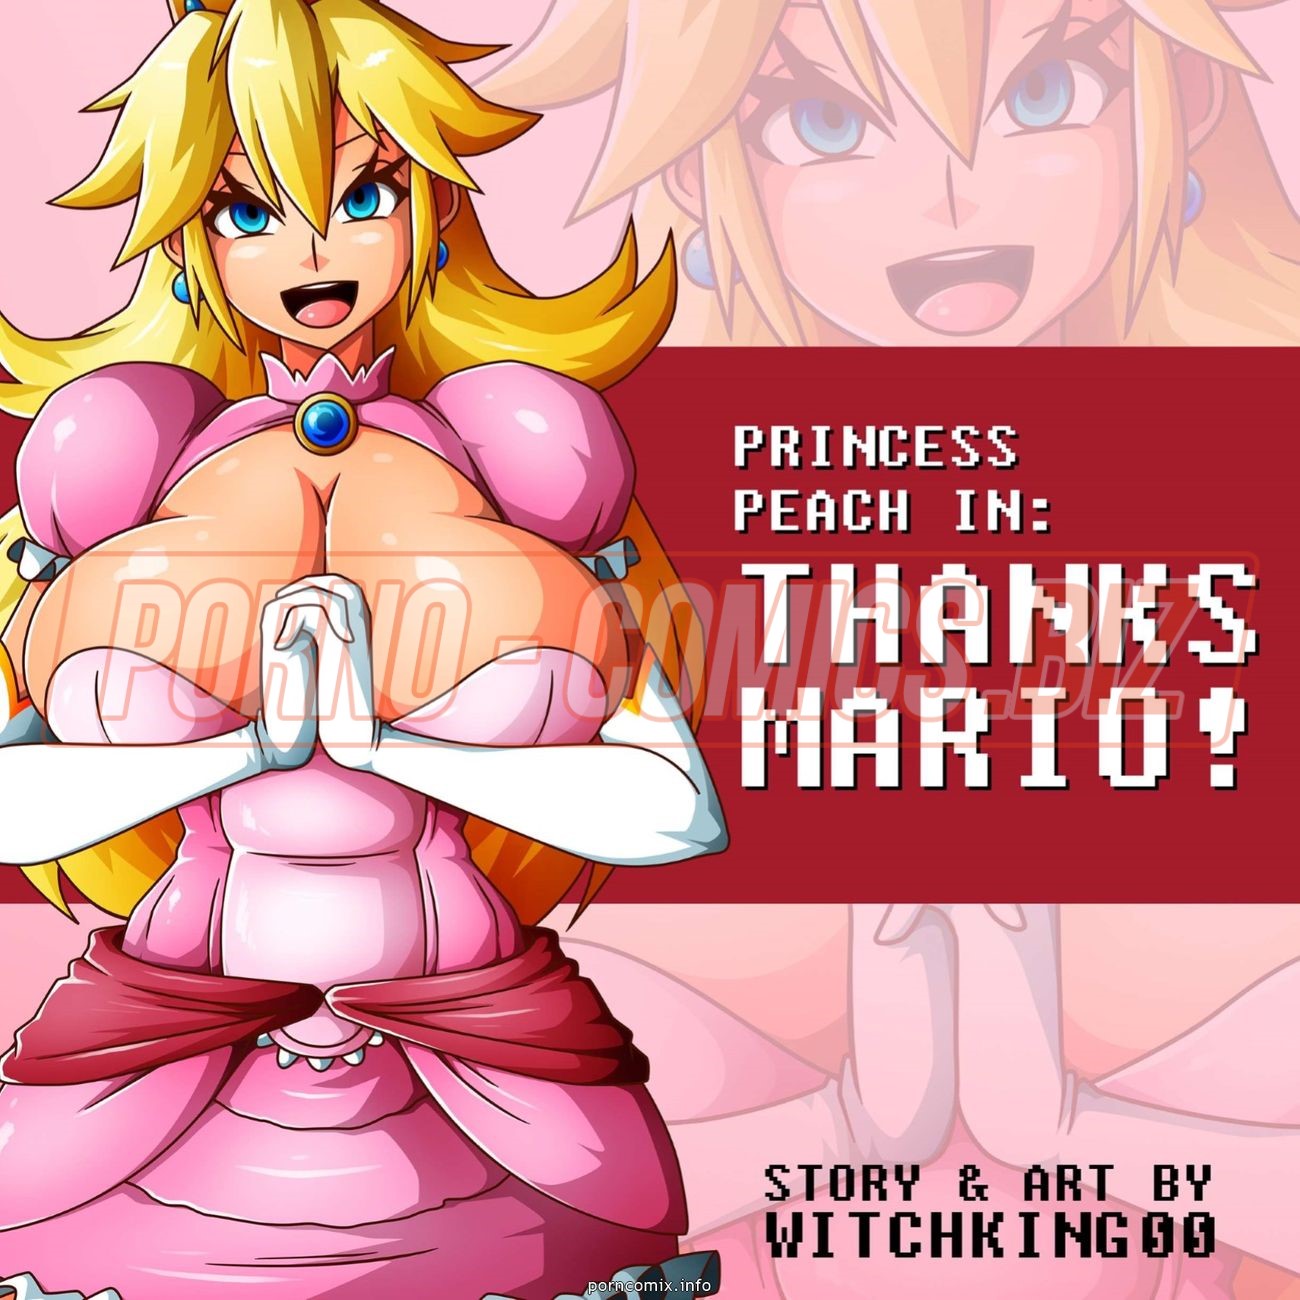 Принцесса с огромными бидонами благодарит Марио за спасение из высокой башни